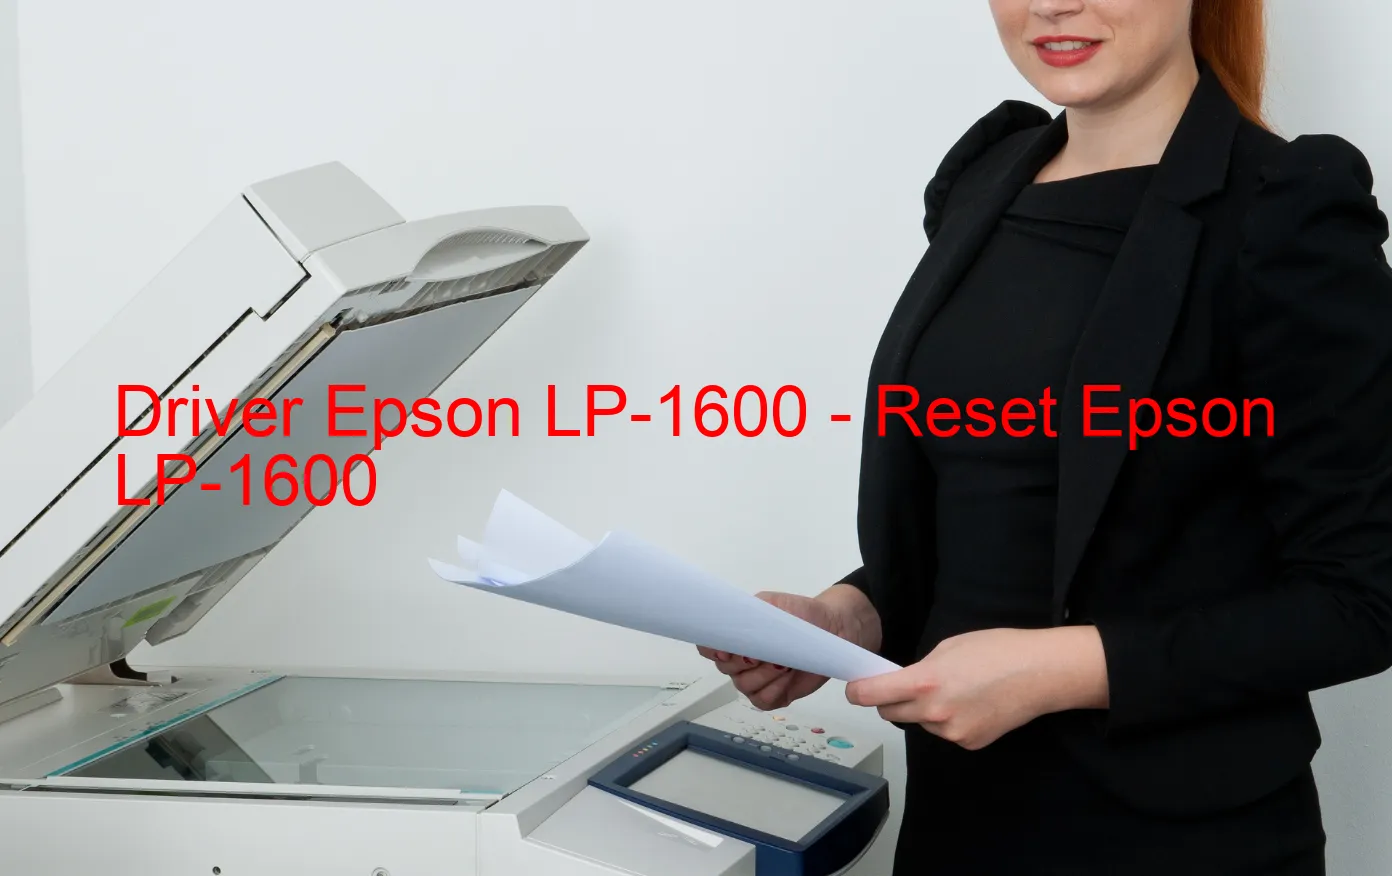 Epson LP-1600のドライバー、Epson LP-1600のリセットソフトウェア